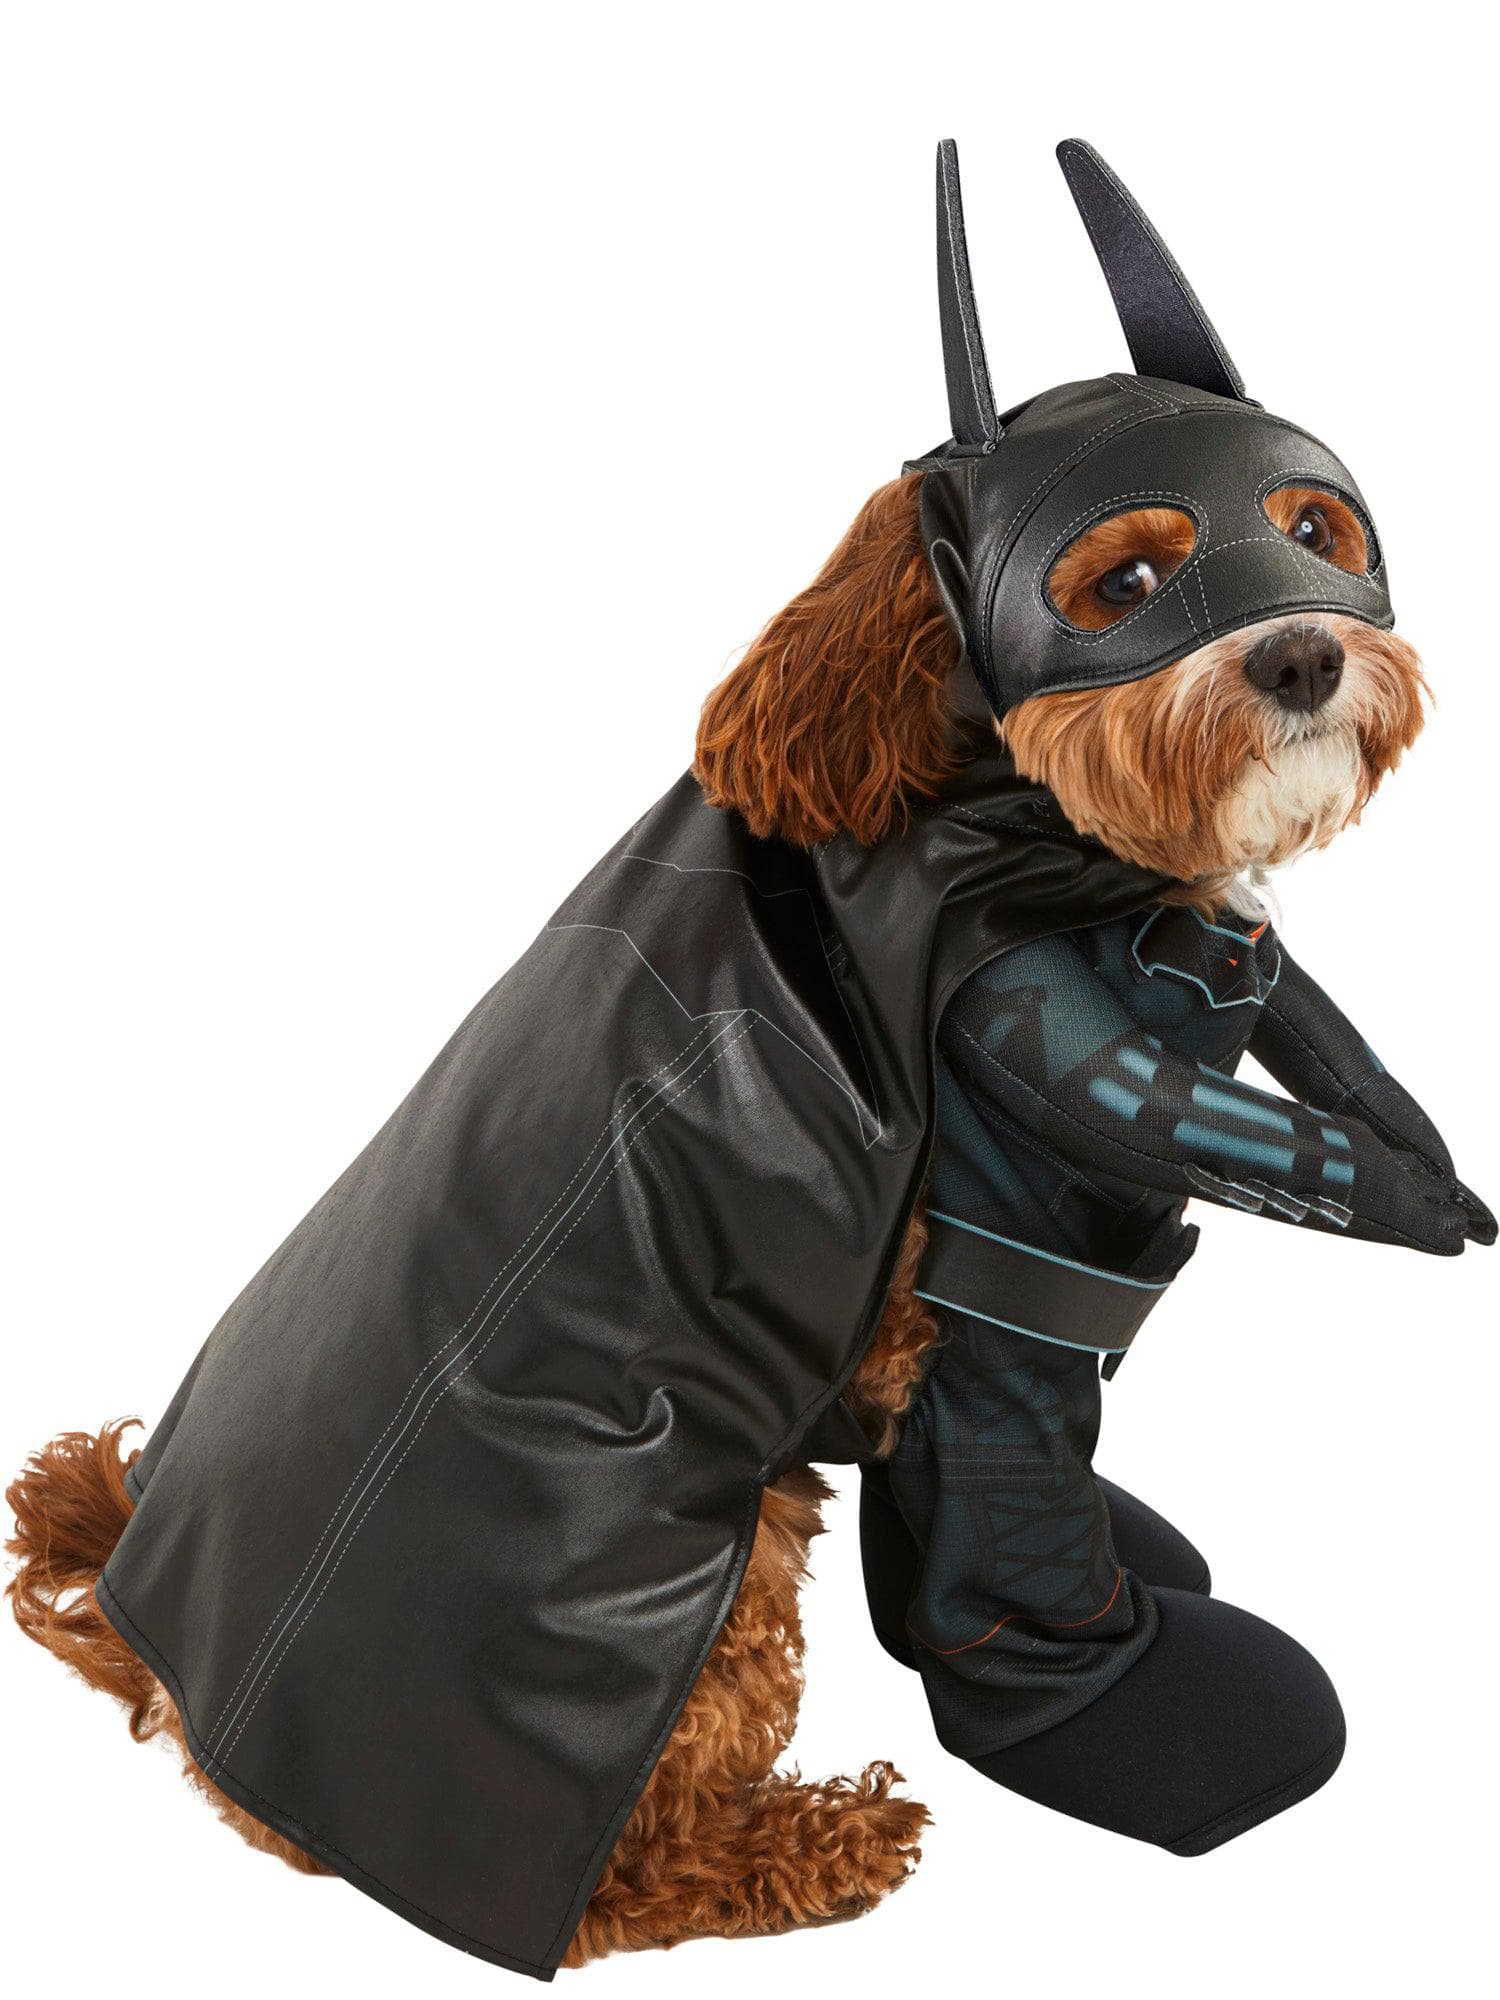 The Batman Pet Costume - costumes.com